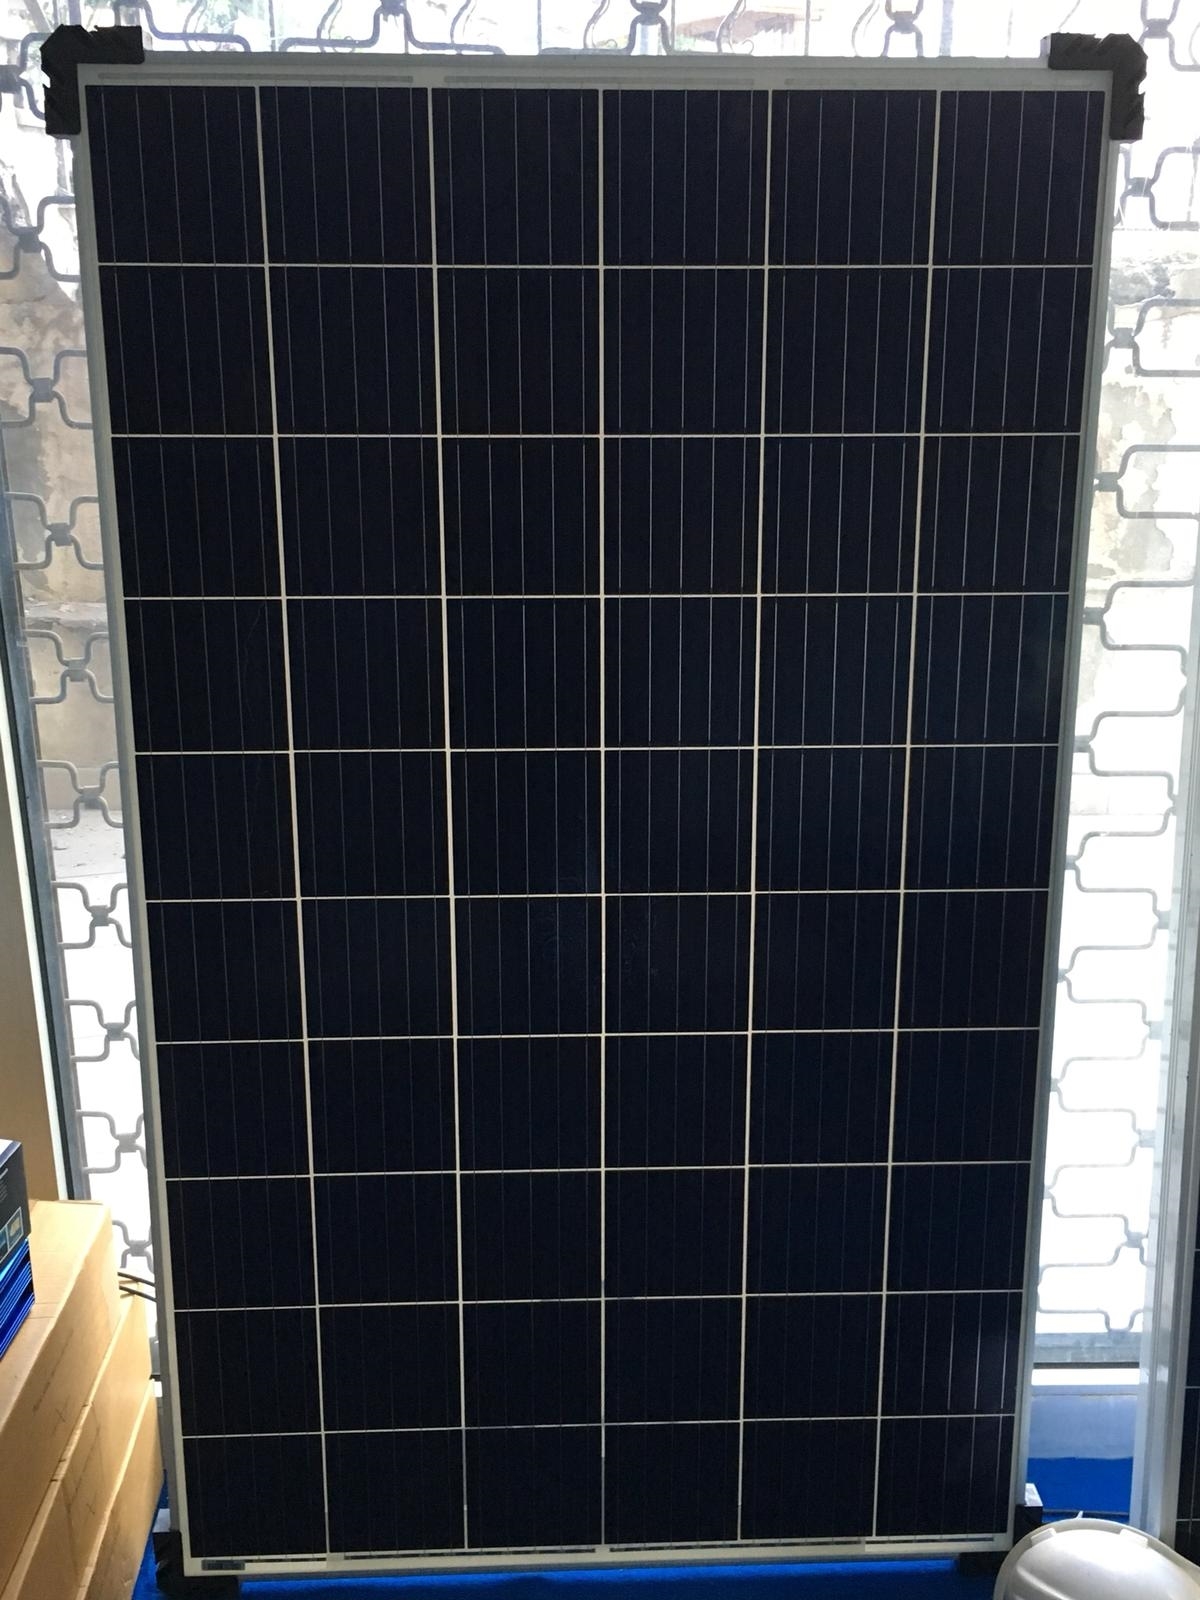 280 Watt Güneş Paneli Solar Panel - Alibaba.com.tr Türkiyenin Yerel